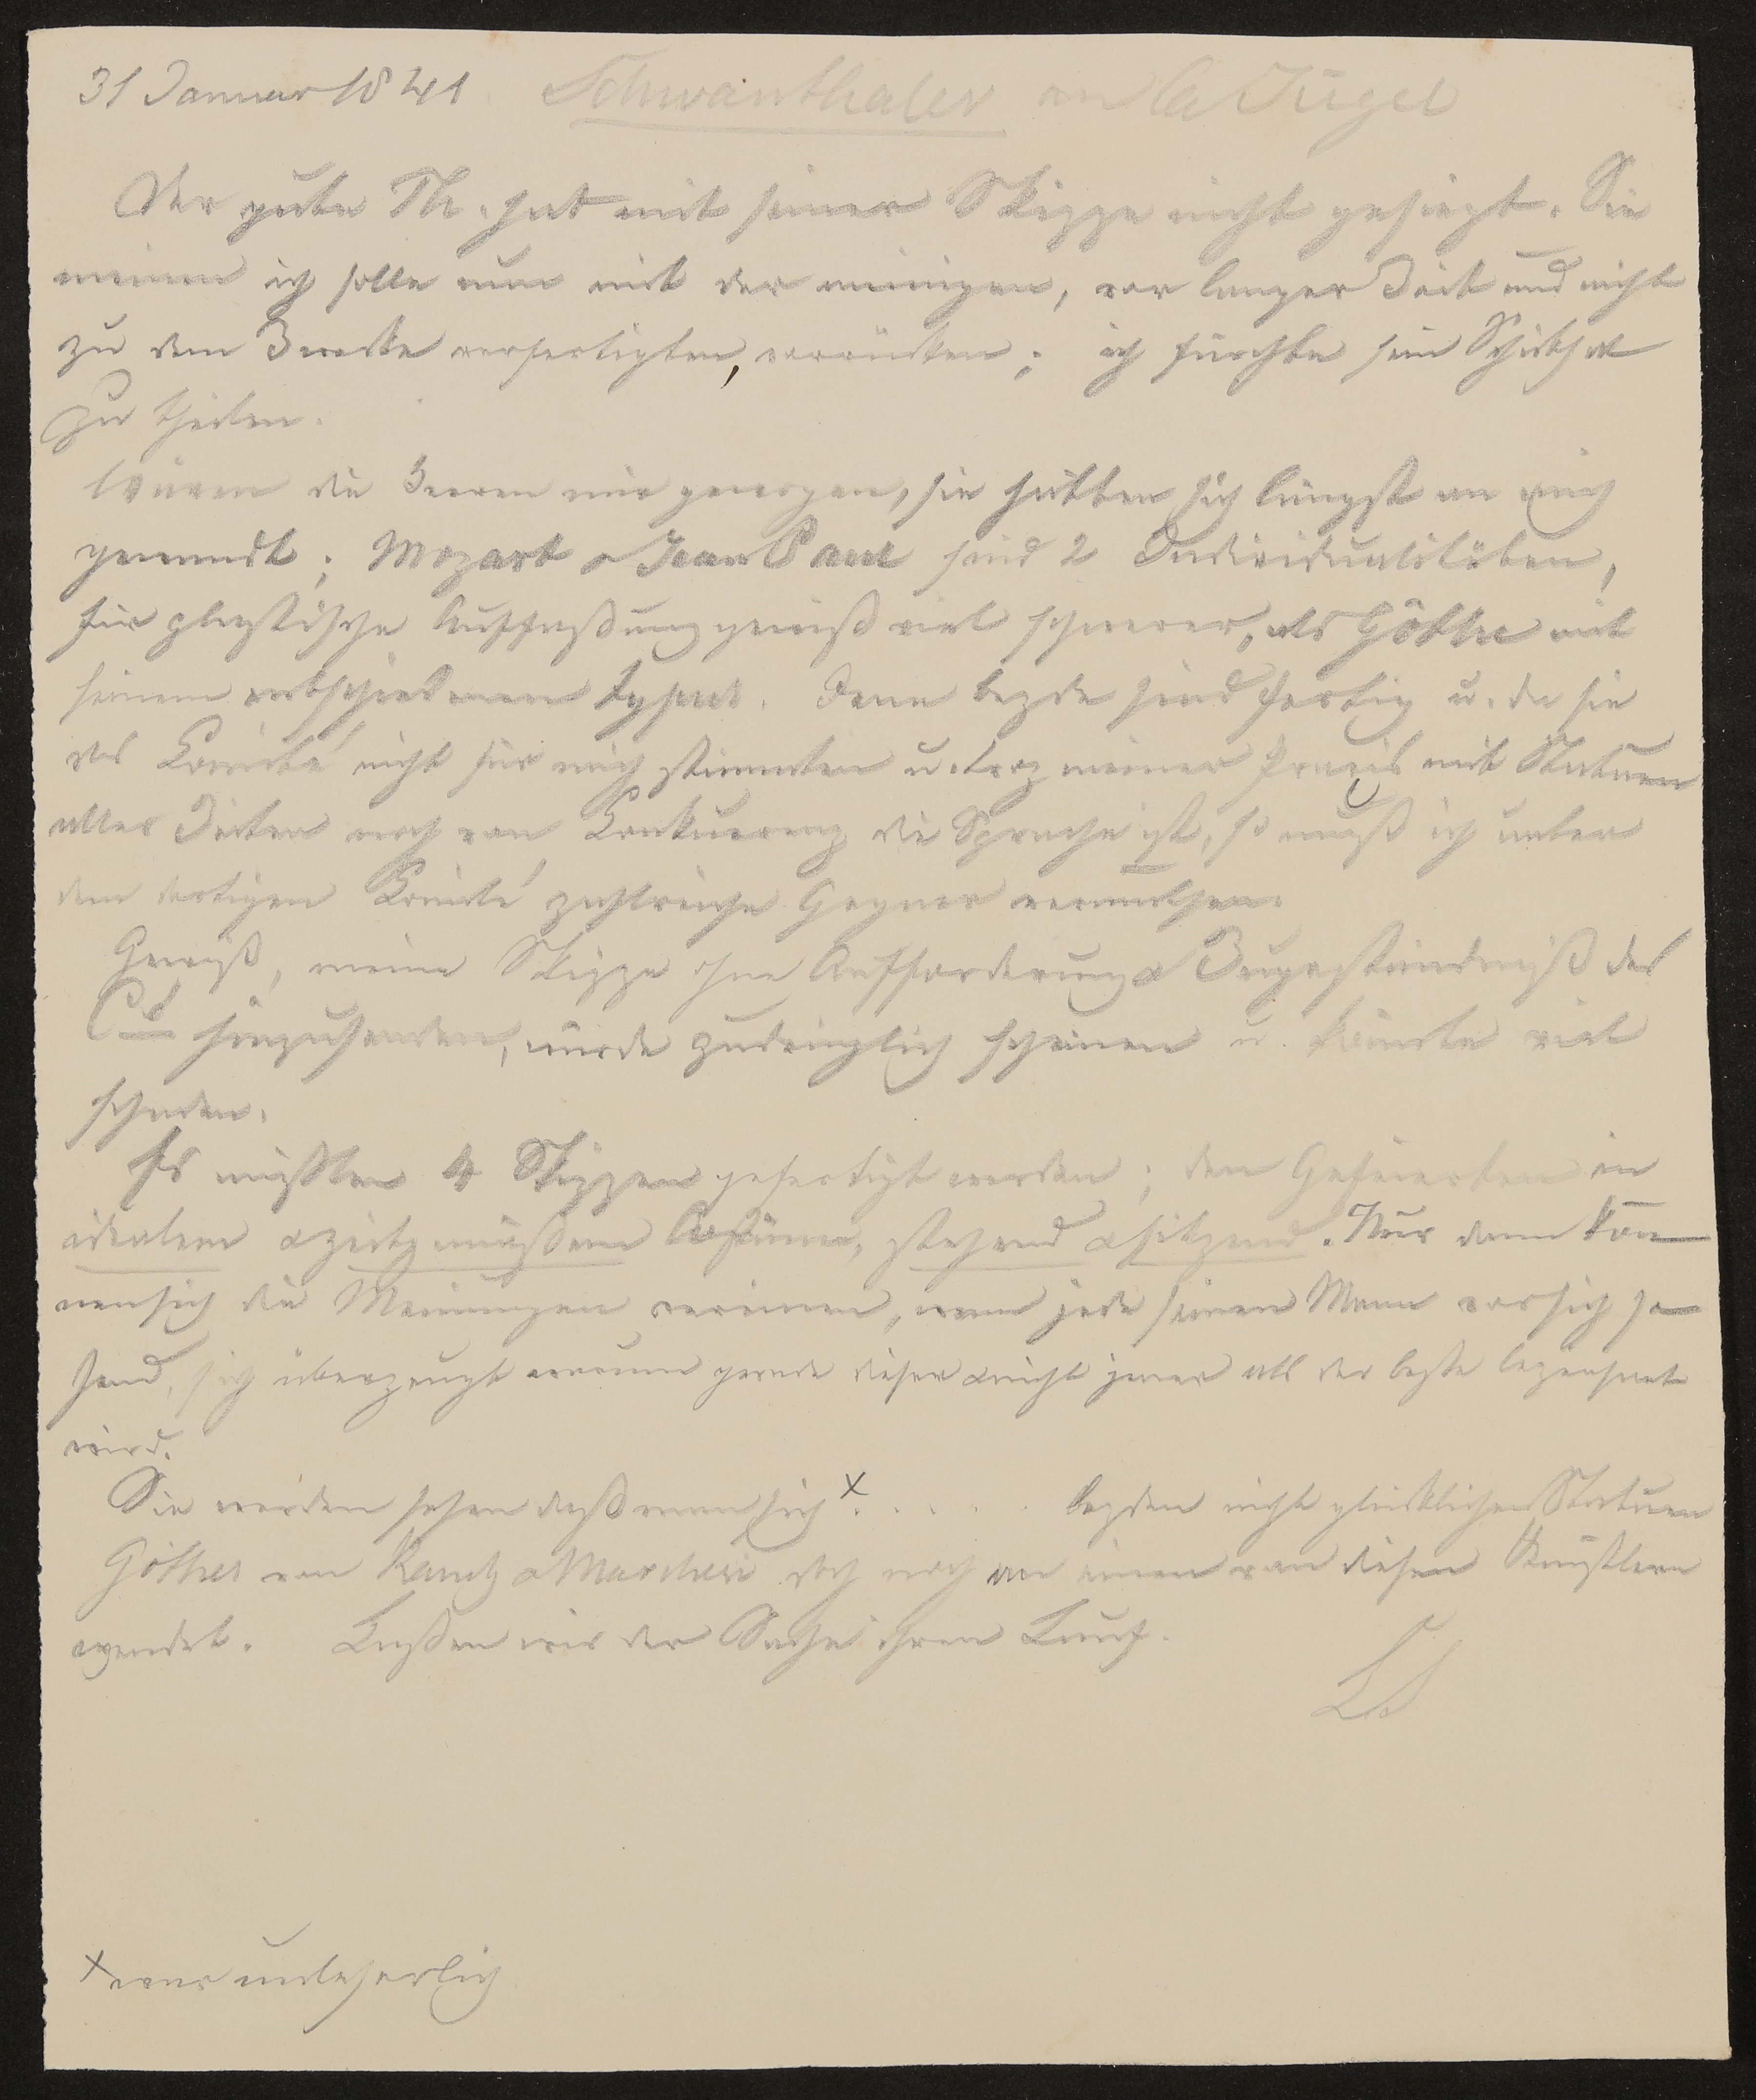 Auszugsweise Abschrift aus einem Brief von Ludwig Schwanthaler an Carl Jügel vom 31.01.1841 (Freies Deutsches Hochstift / Frankfurter Goethe-Museum Public Domain Mark)